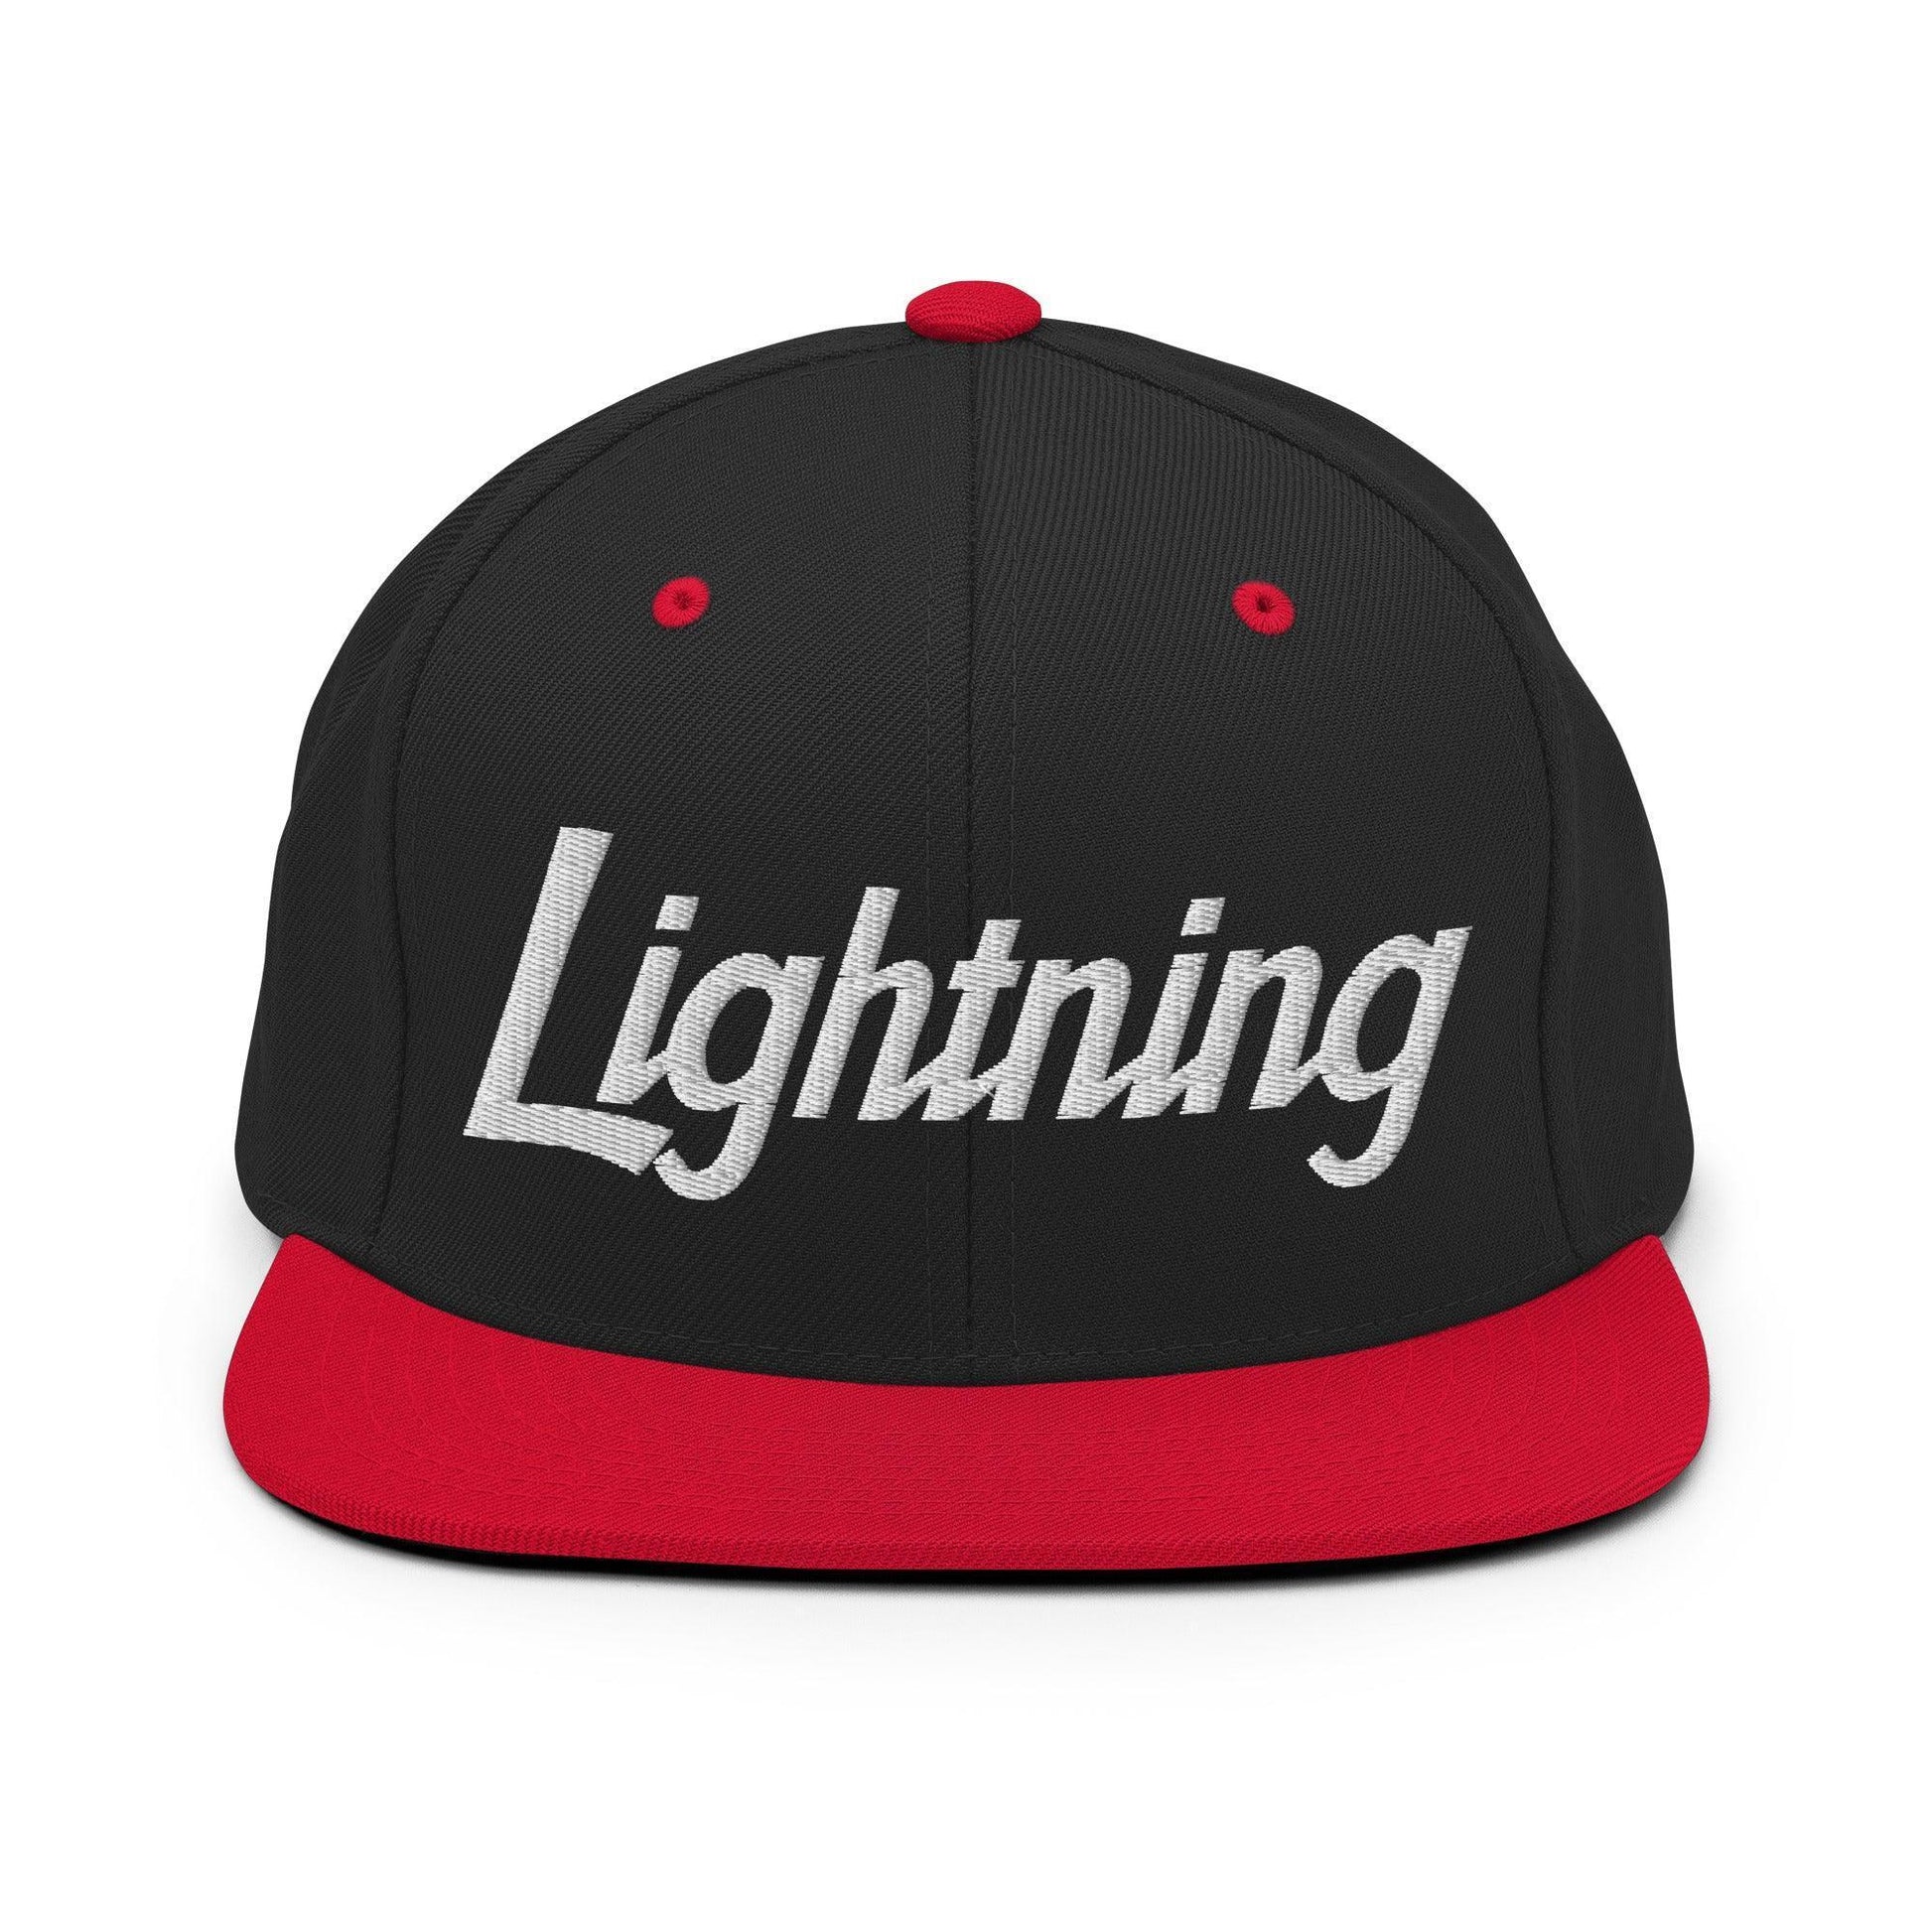 Lightning School Mascot Script Snapback Hat Black/ Red